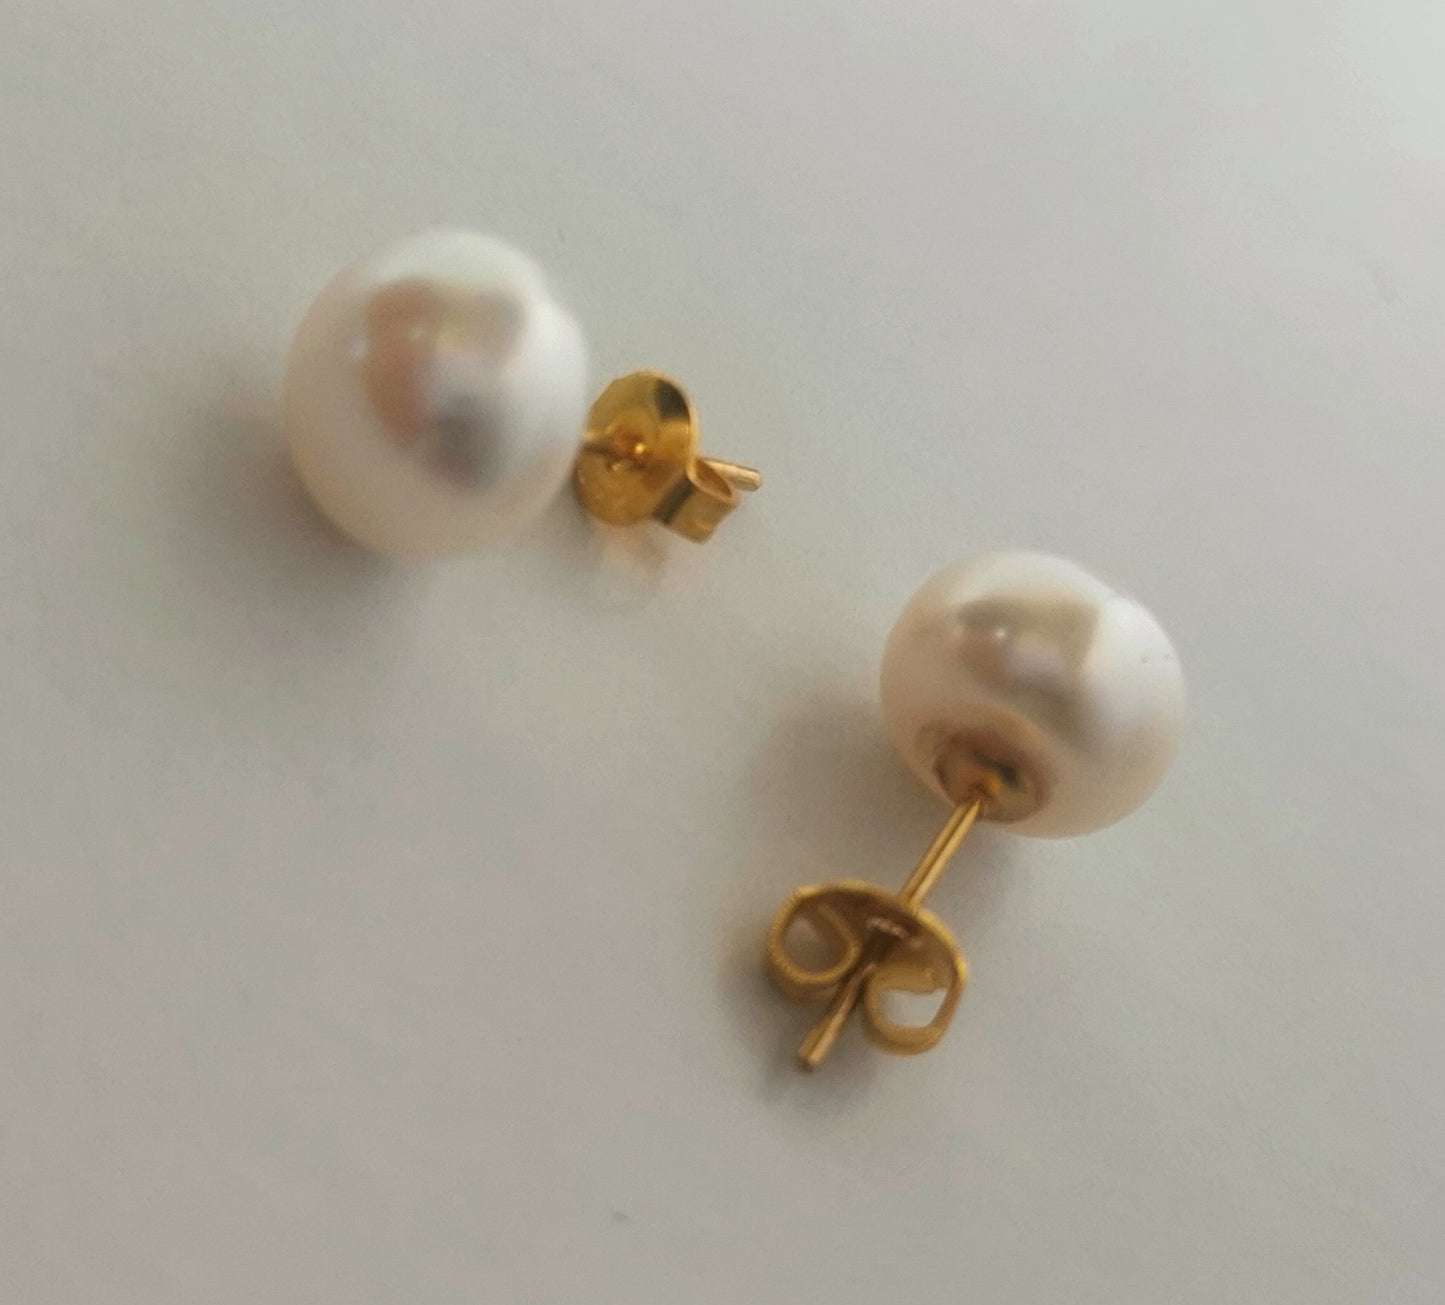 Boucles d'oreilles perles de culture blanches 9mm montées sur clous plaqués or. Présentées perpendiculairement, boucle de gauche perle à gauche, boucle de droite verticale, perle en haut, posées sur un fond blanc. Vue de dessus en gros plan.